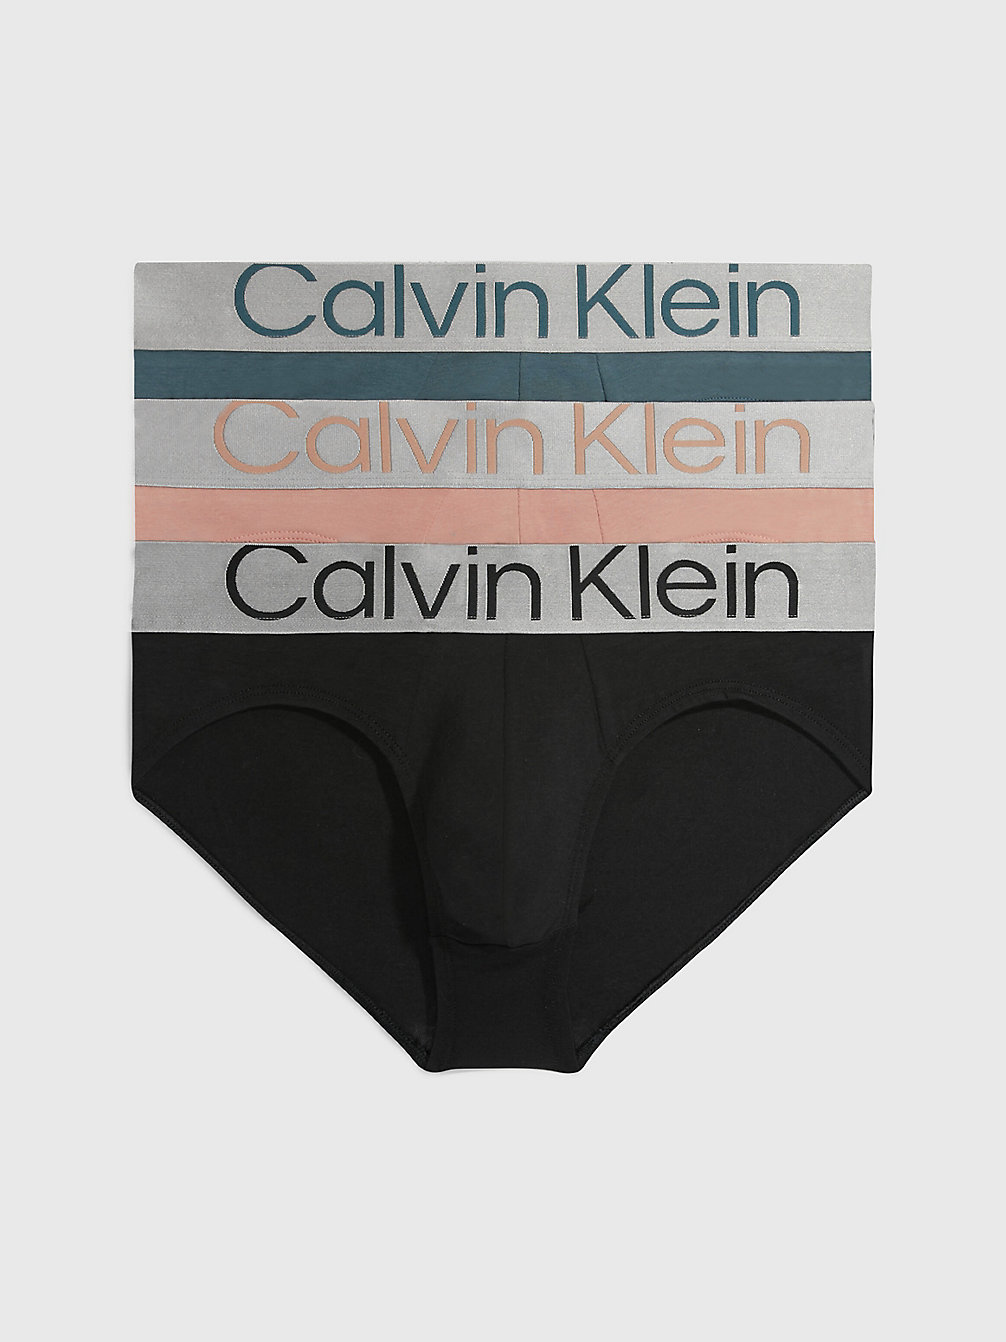 BLUE LAKE/ CLAY/ BLACK 3 Pack Briefs - Steel Cotton undefined men Calvin Klein